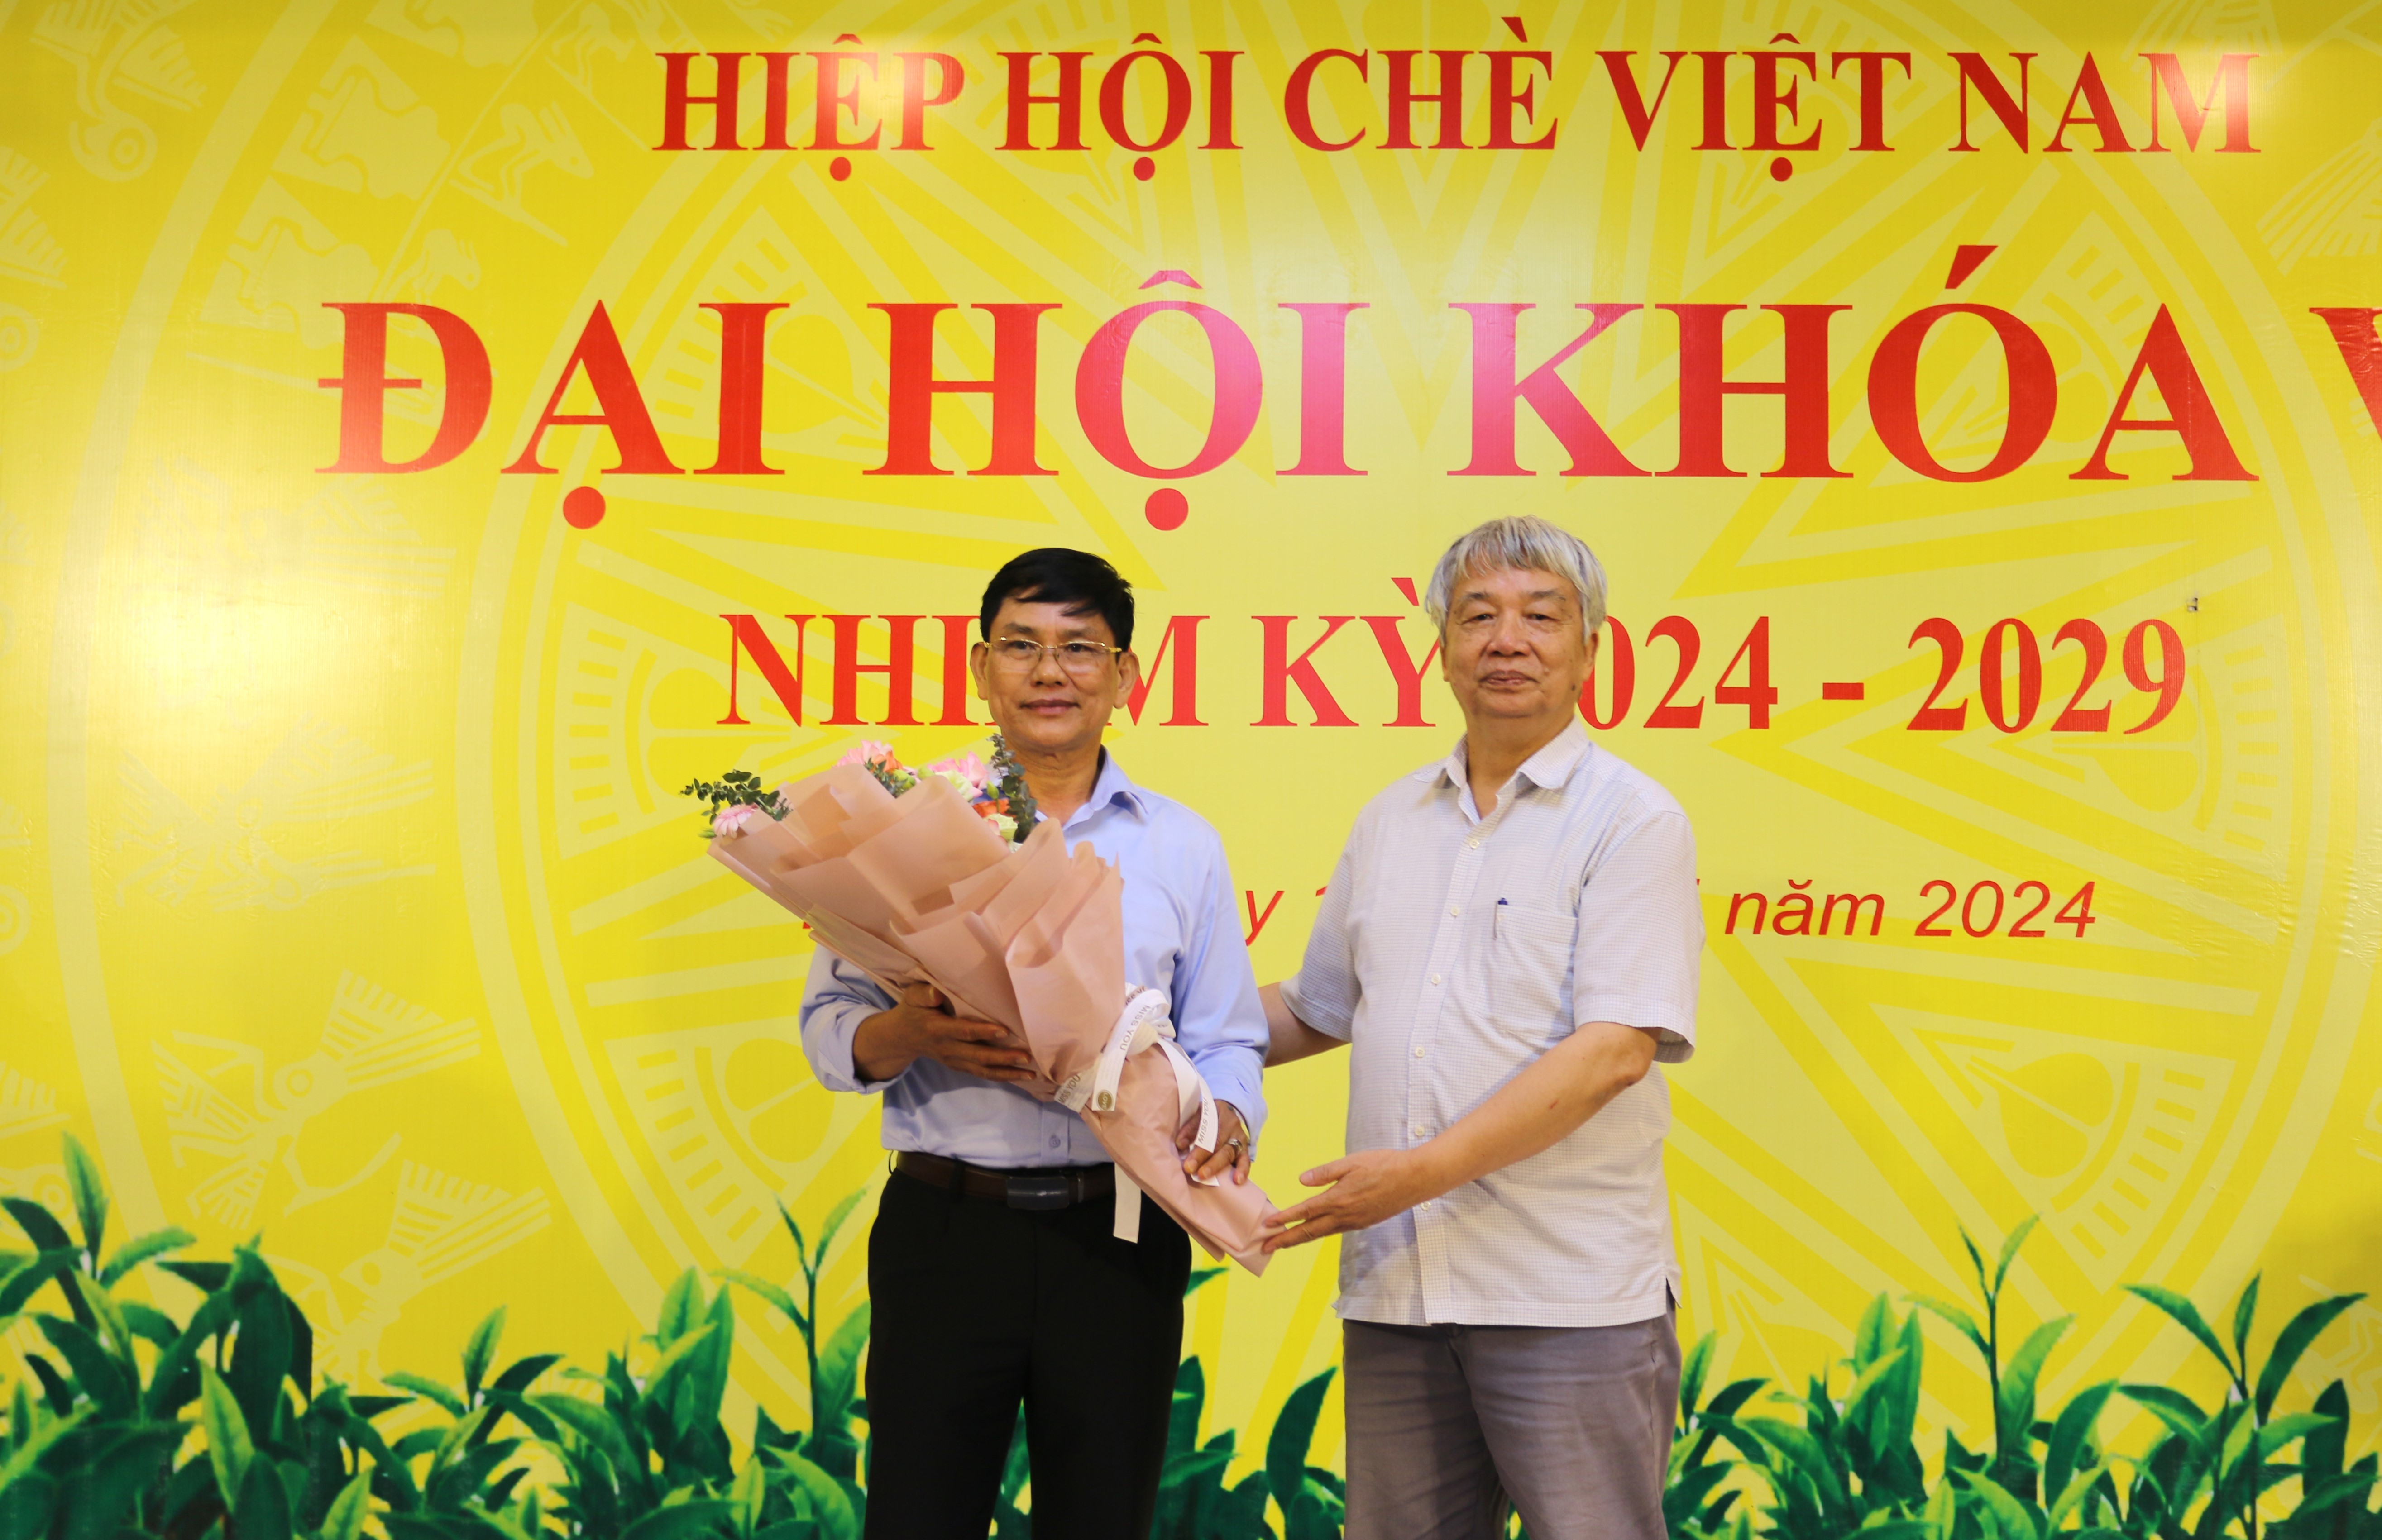 Tiến sĩ Nguyễn Hữu Tài - Nguyên Chủ tịch Hiệp hội Chè Việt Nam tặng hoa chúc mừng Tân Chủ tịch Hiệp hội Chè Việt Nam 